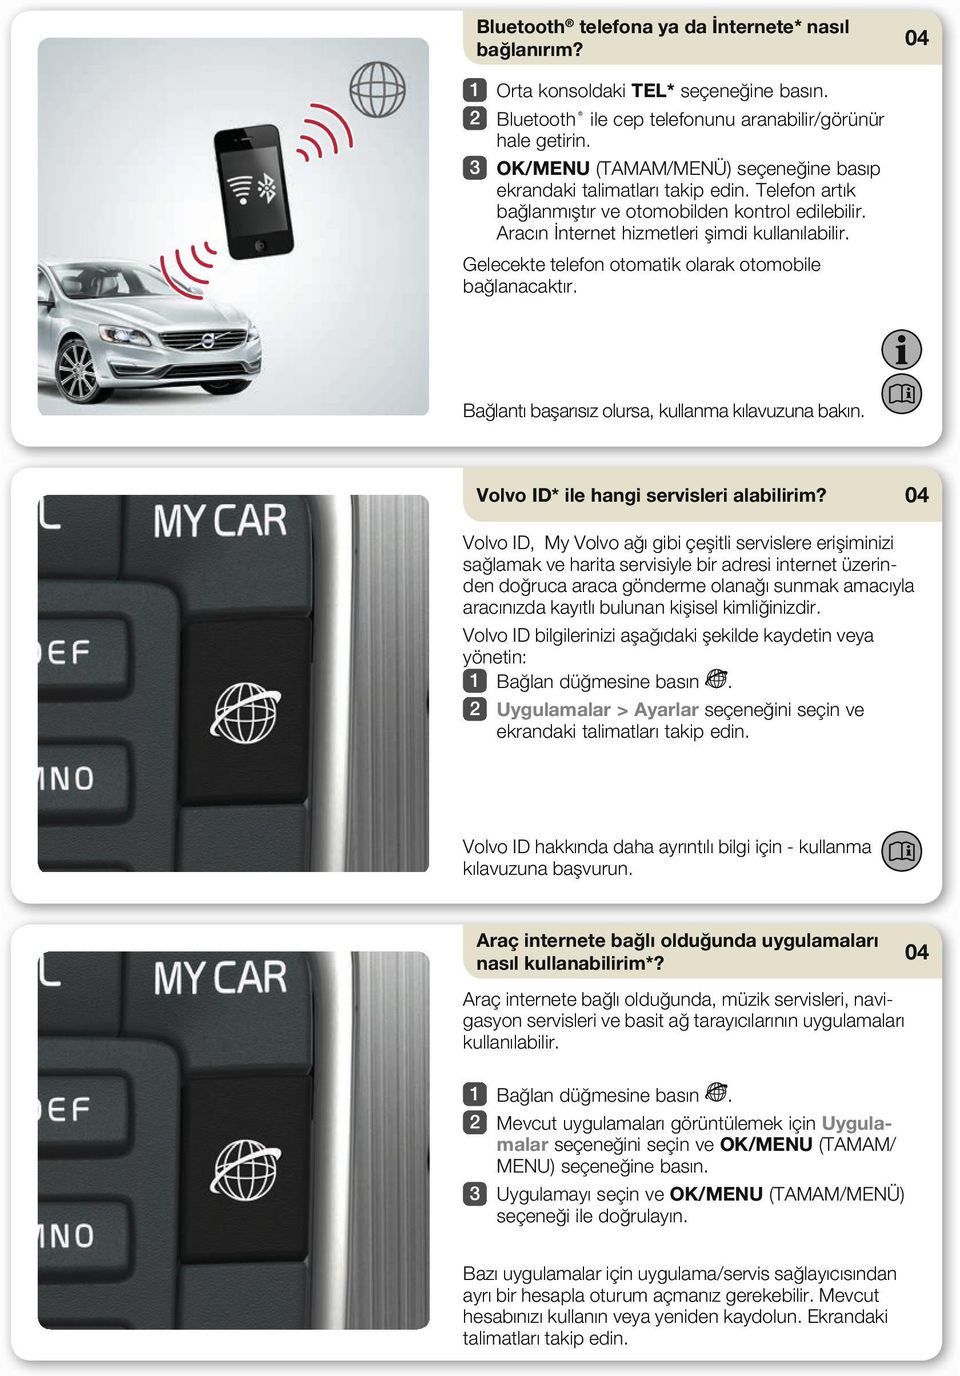 Gelecekte telefon otomatik olarak otomobile bağlanacaktır. Bağlantı başarısız olursa, kullanma kılavuzuna bakın. Volvo ID* ile hangi servisleri alabilirim?